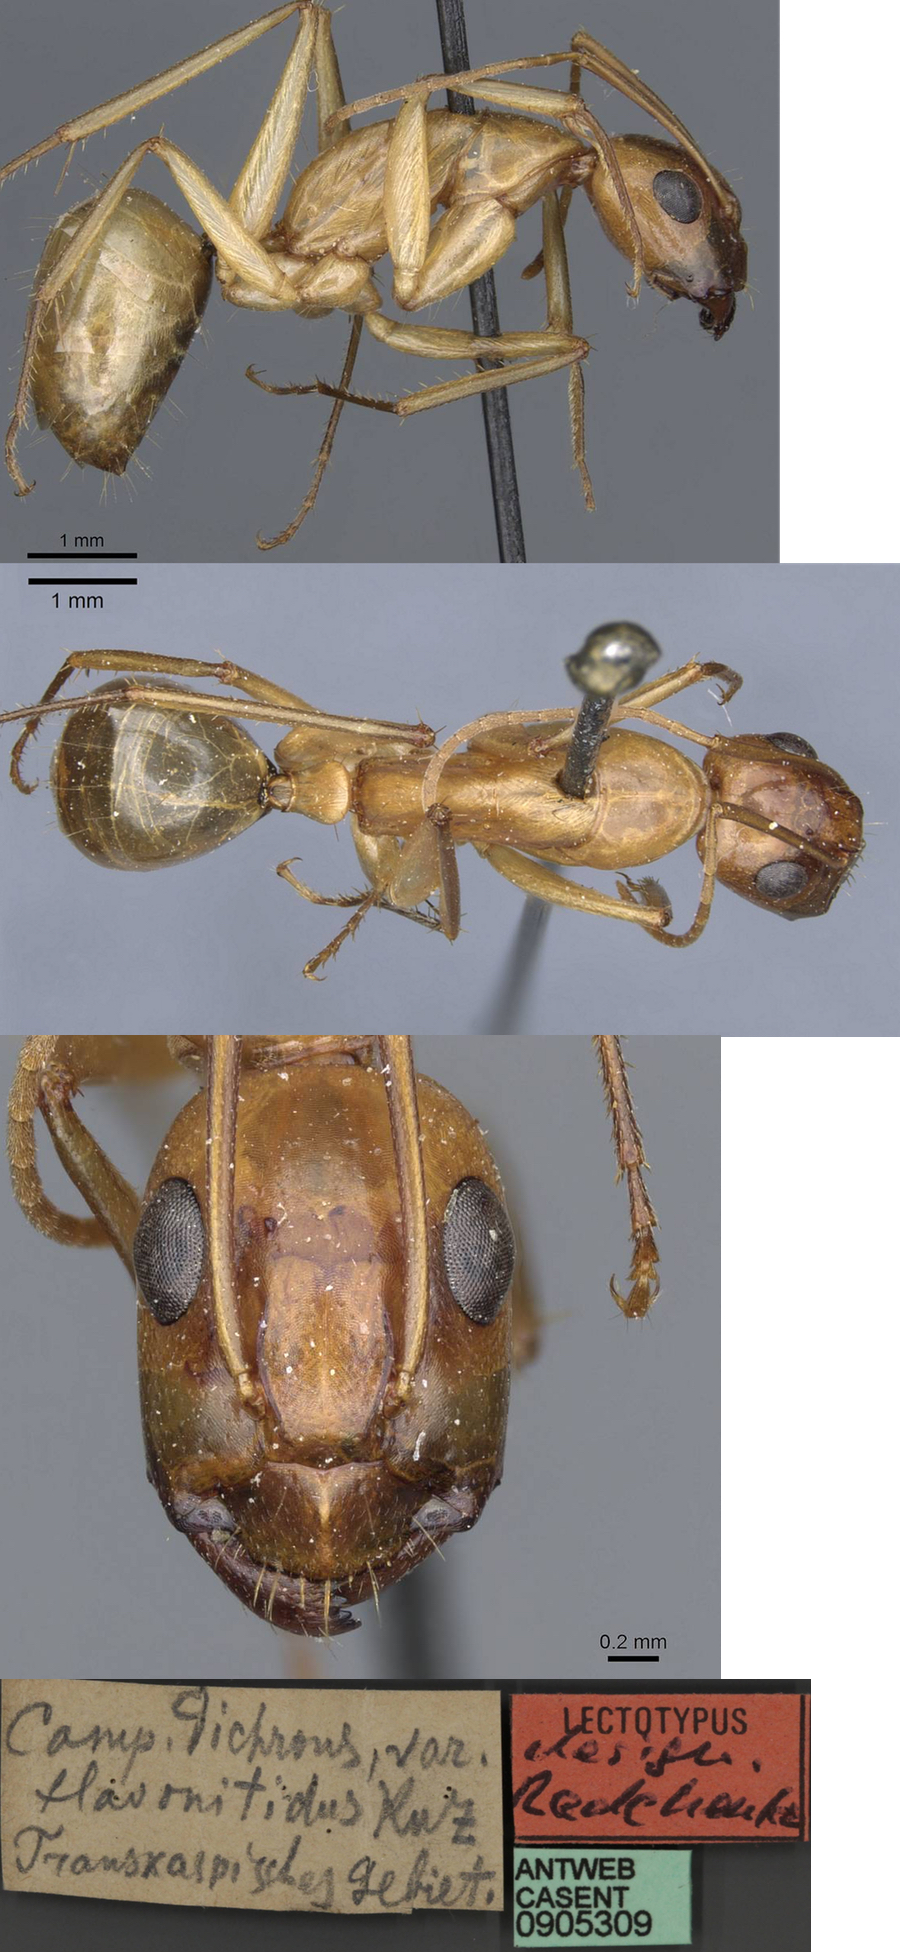 {Camponotus turkestanus flavonitidus minor}